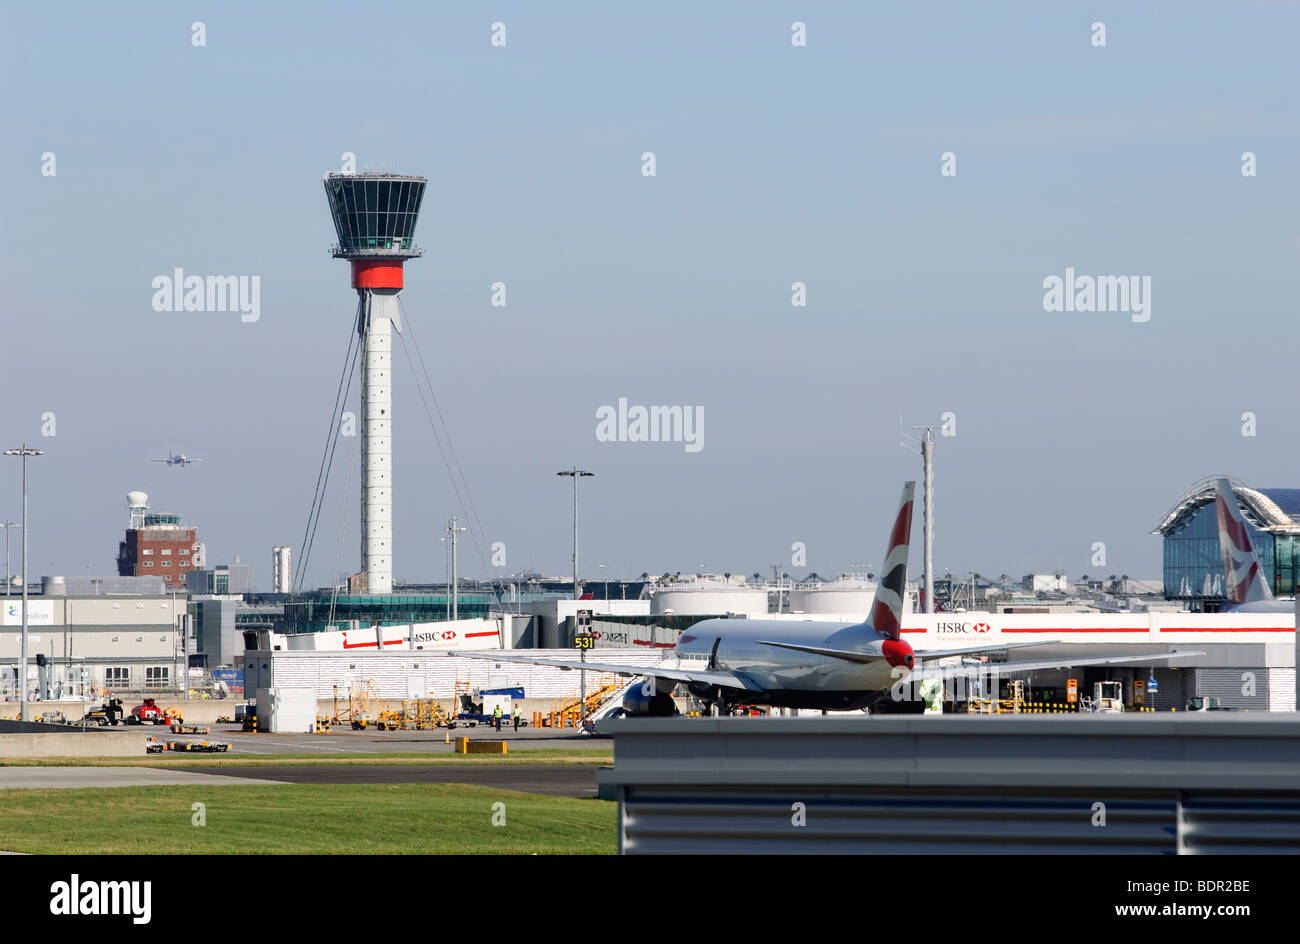 Del Aeropuerto de Heathrow de Londres, mostrando tanto a viejas y nuevas torres de control de tráfico aéreo, y un Boeing 777 de British Airways estacionado. Foto de stock